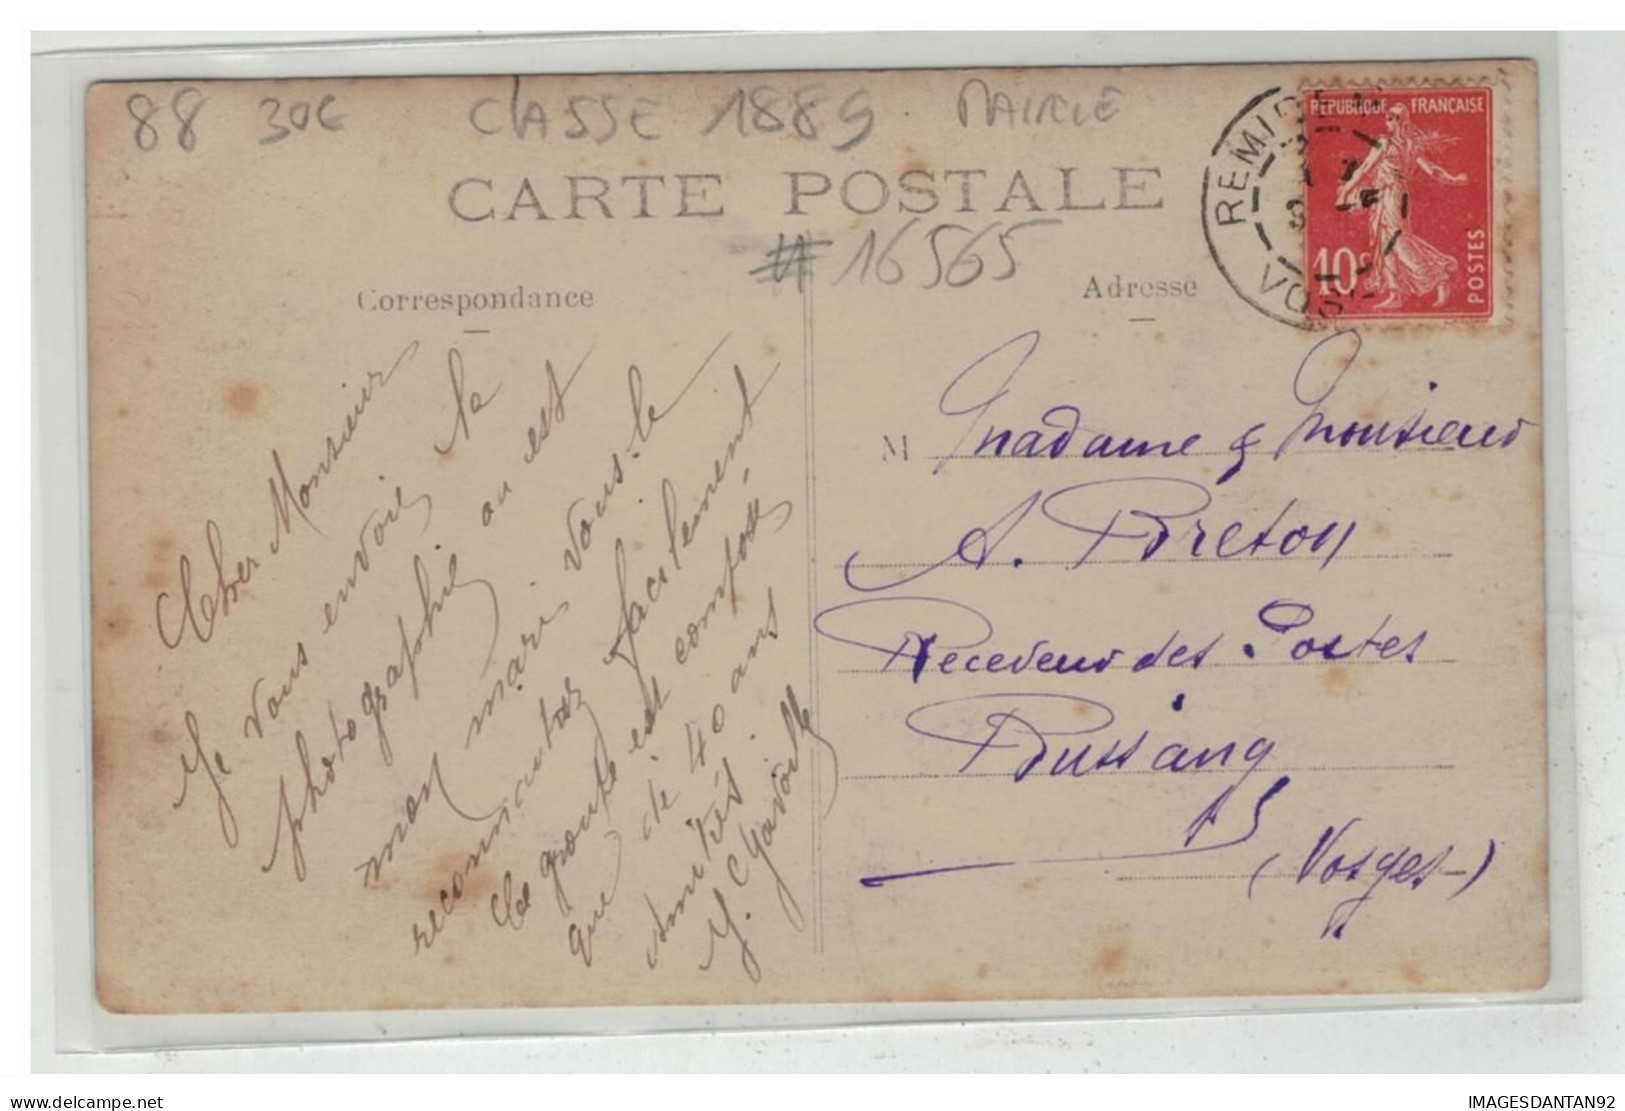 88 REMIREMONT #16565 MAIRIE LA CLASSE DE 1889 CONSCRITS CARTE PHOTO - Remiremont